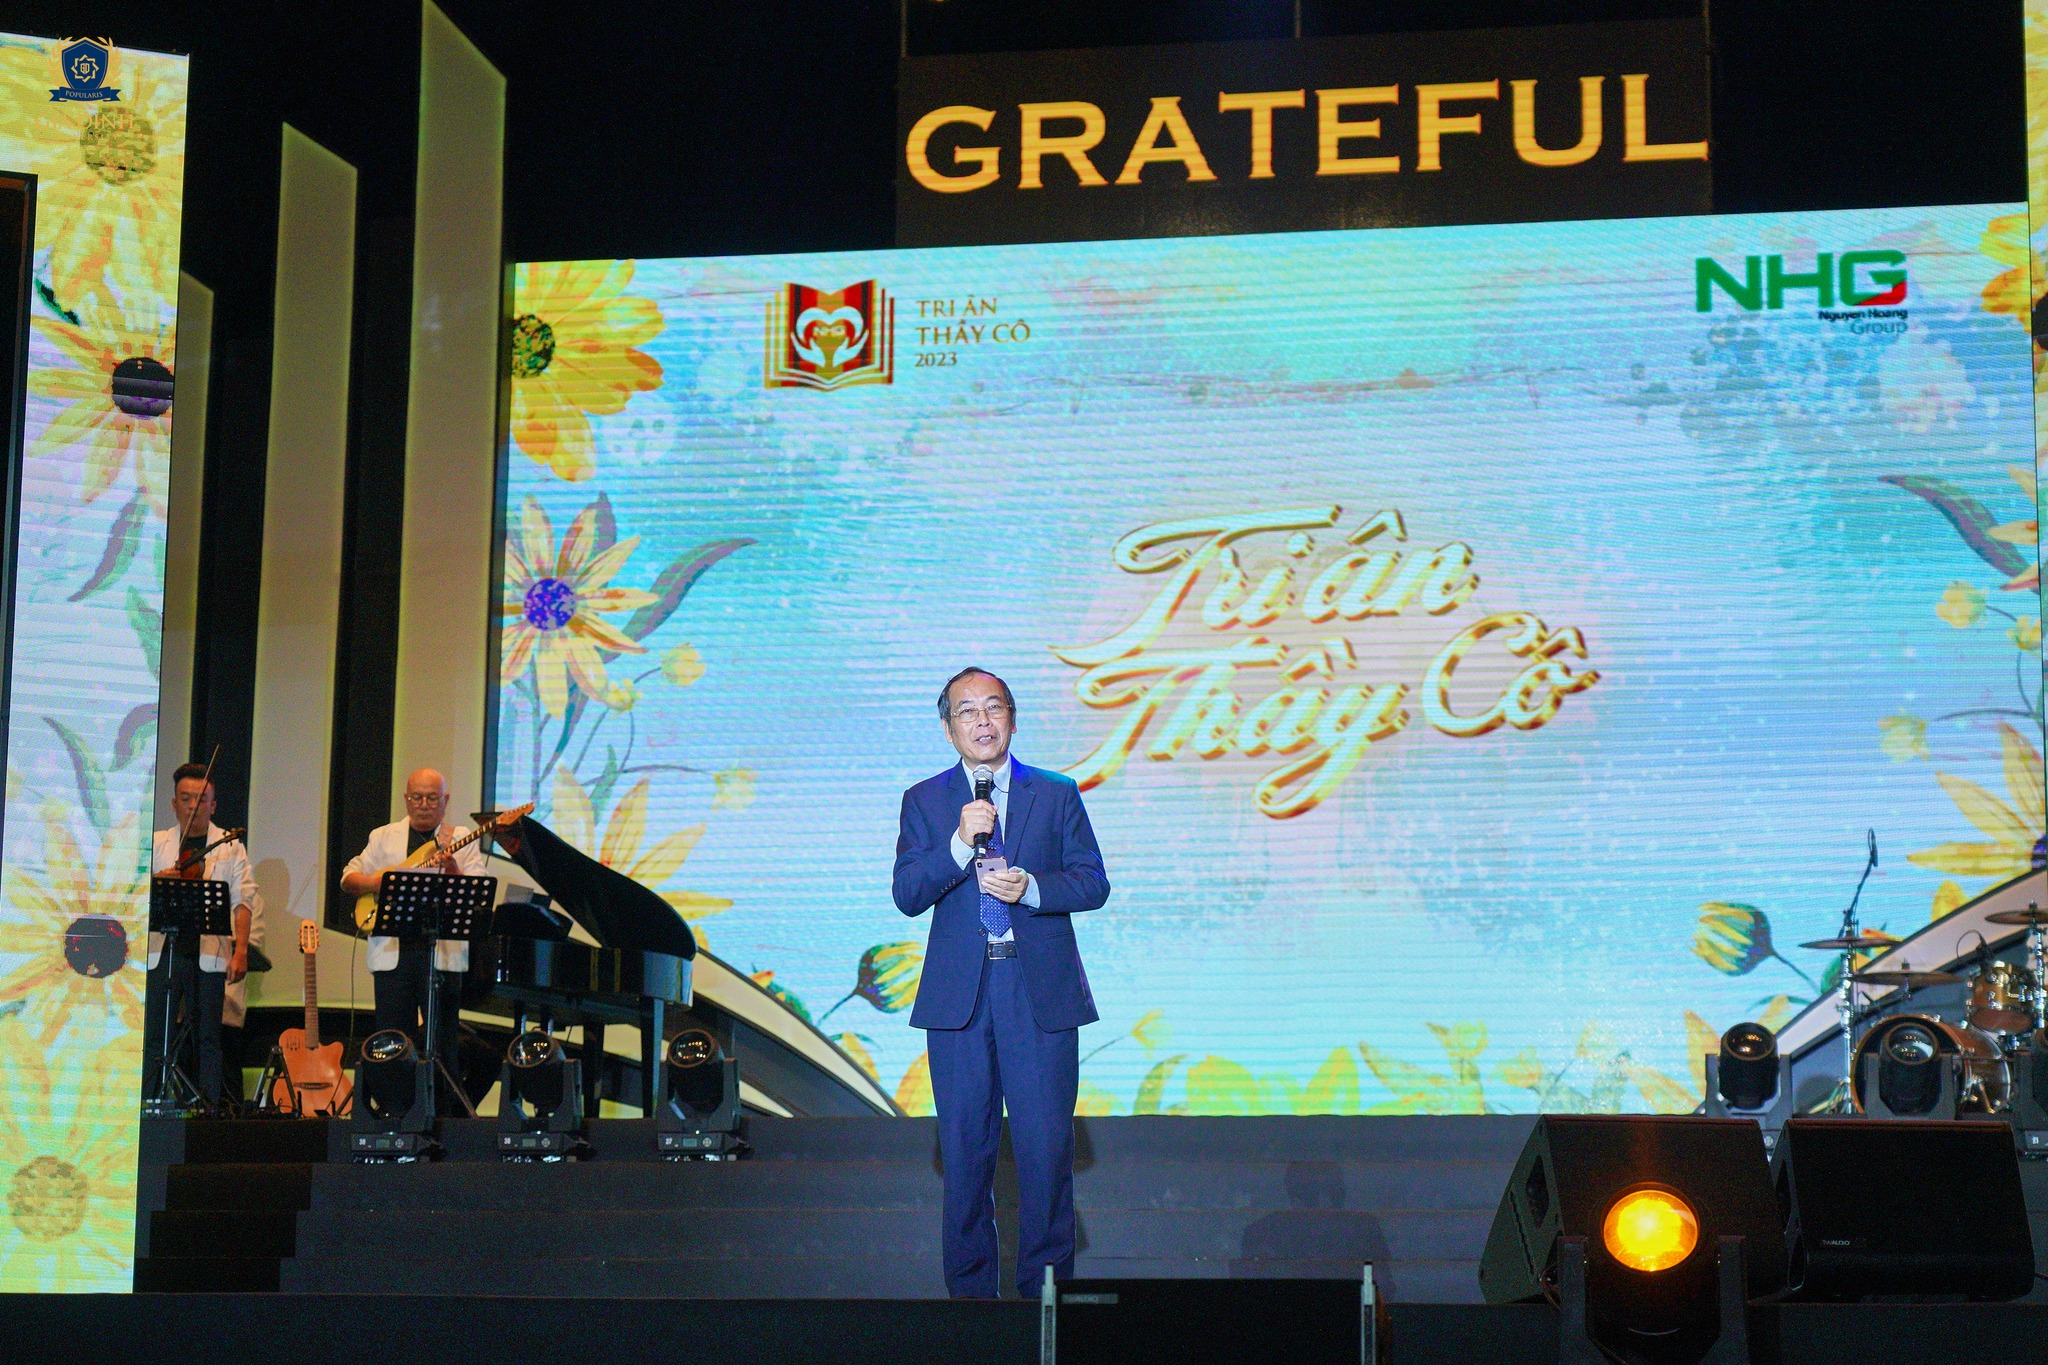 Thay Cuong Nhìn lại “Grateful”: Đêm nhạc để lại bao cảm xúc đẹp về nghề giáo trong lòng khán giả